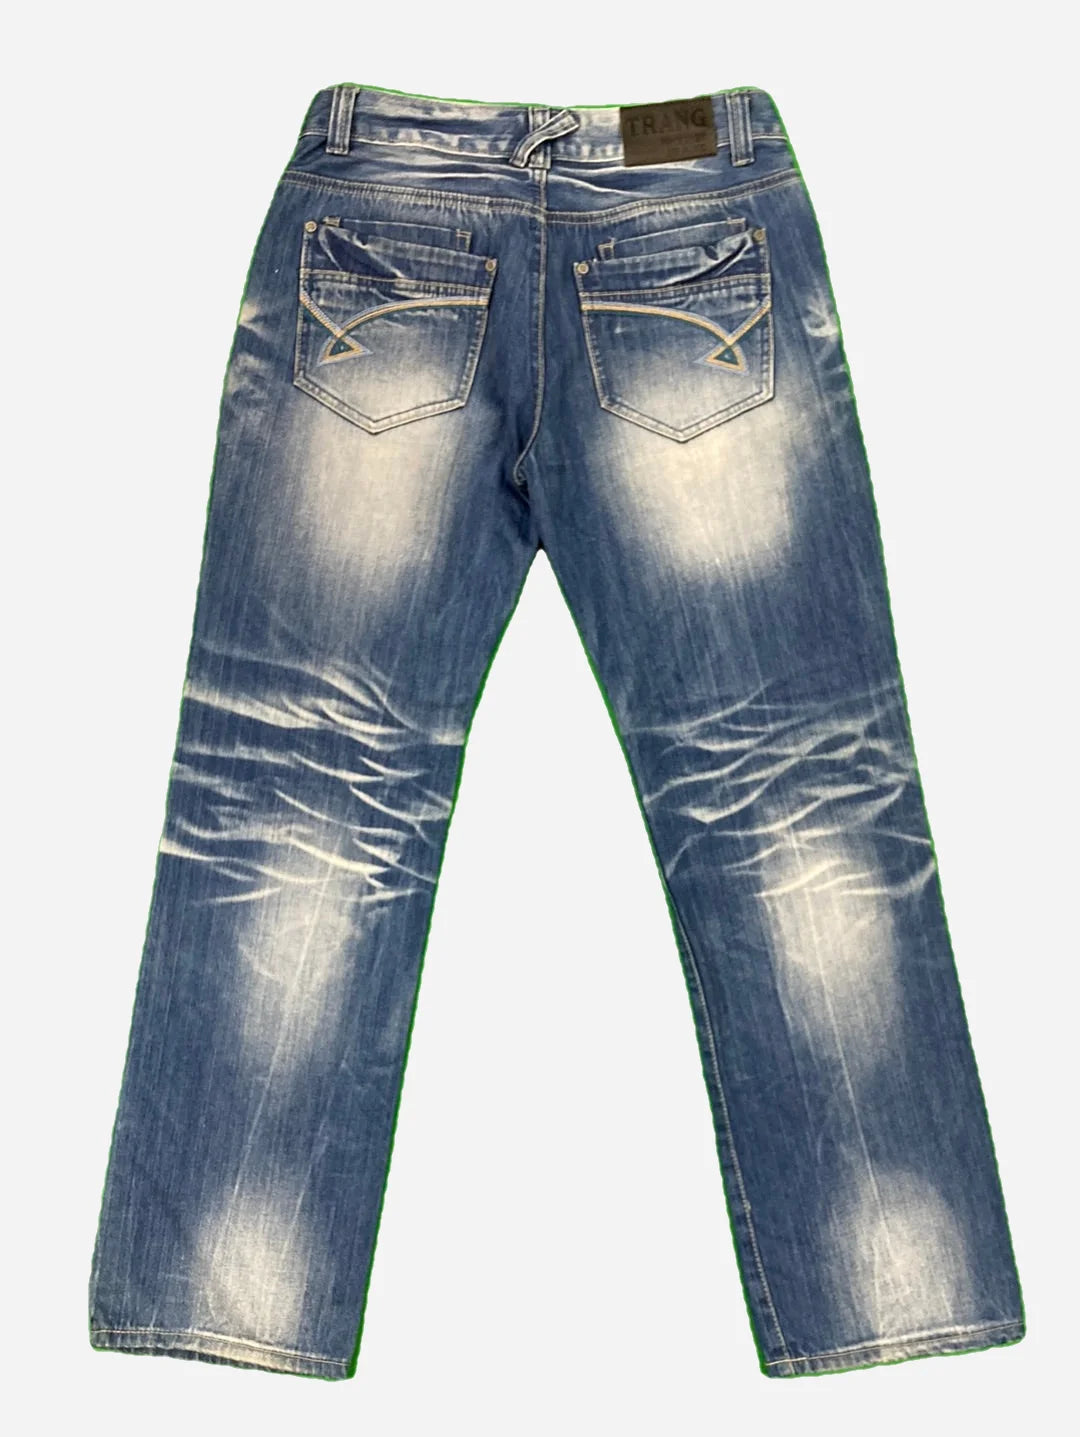 Trang Jeans 33/32 (L)